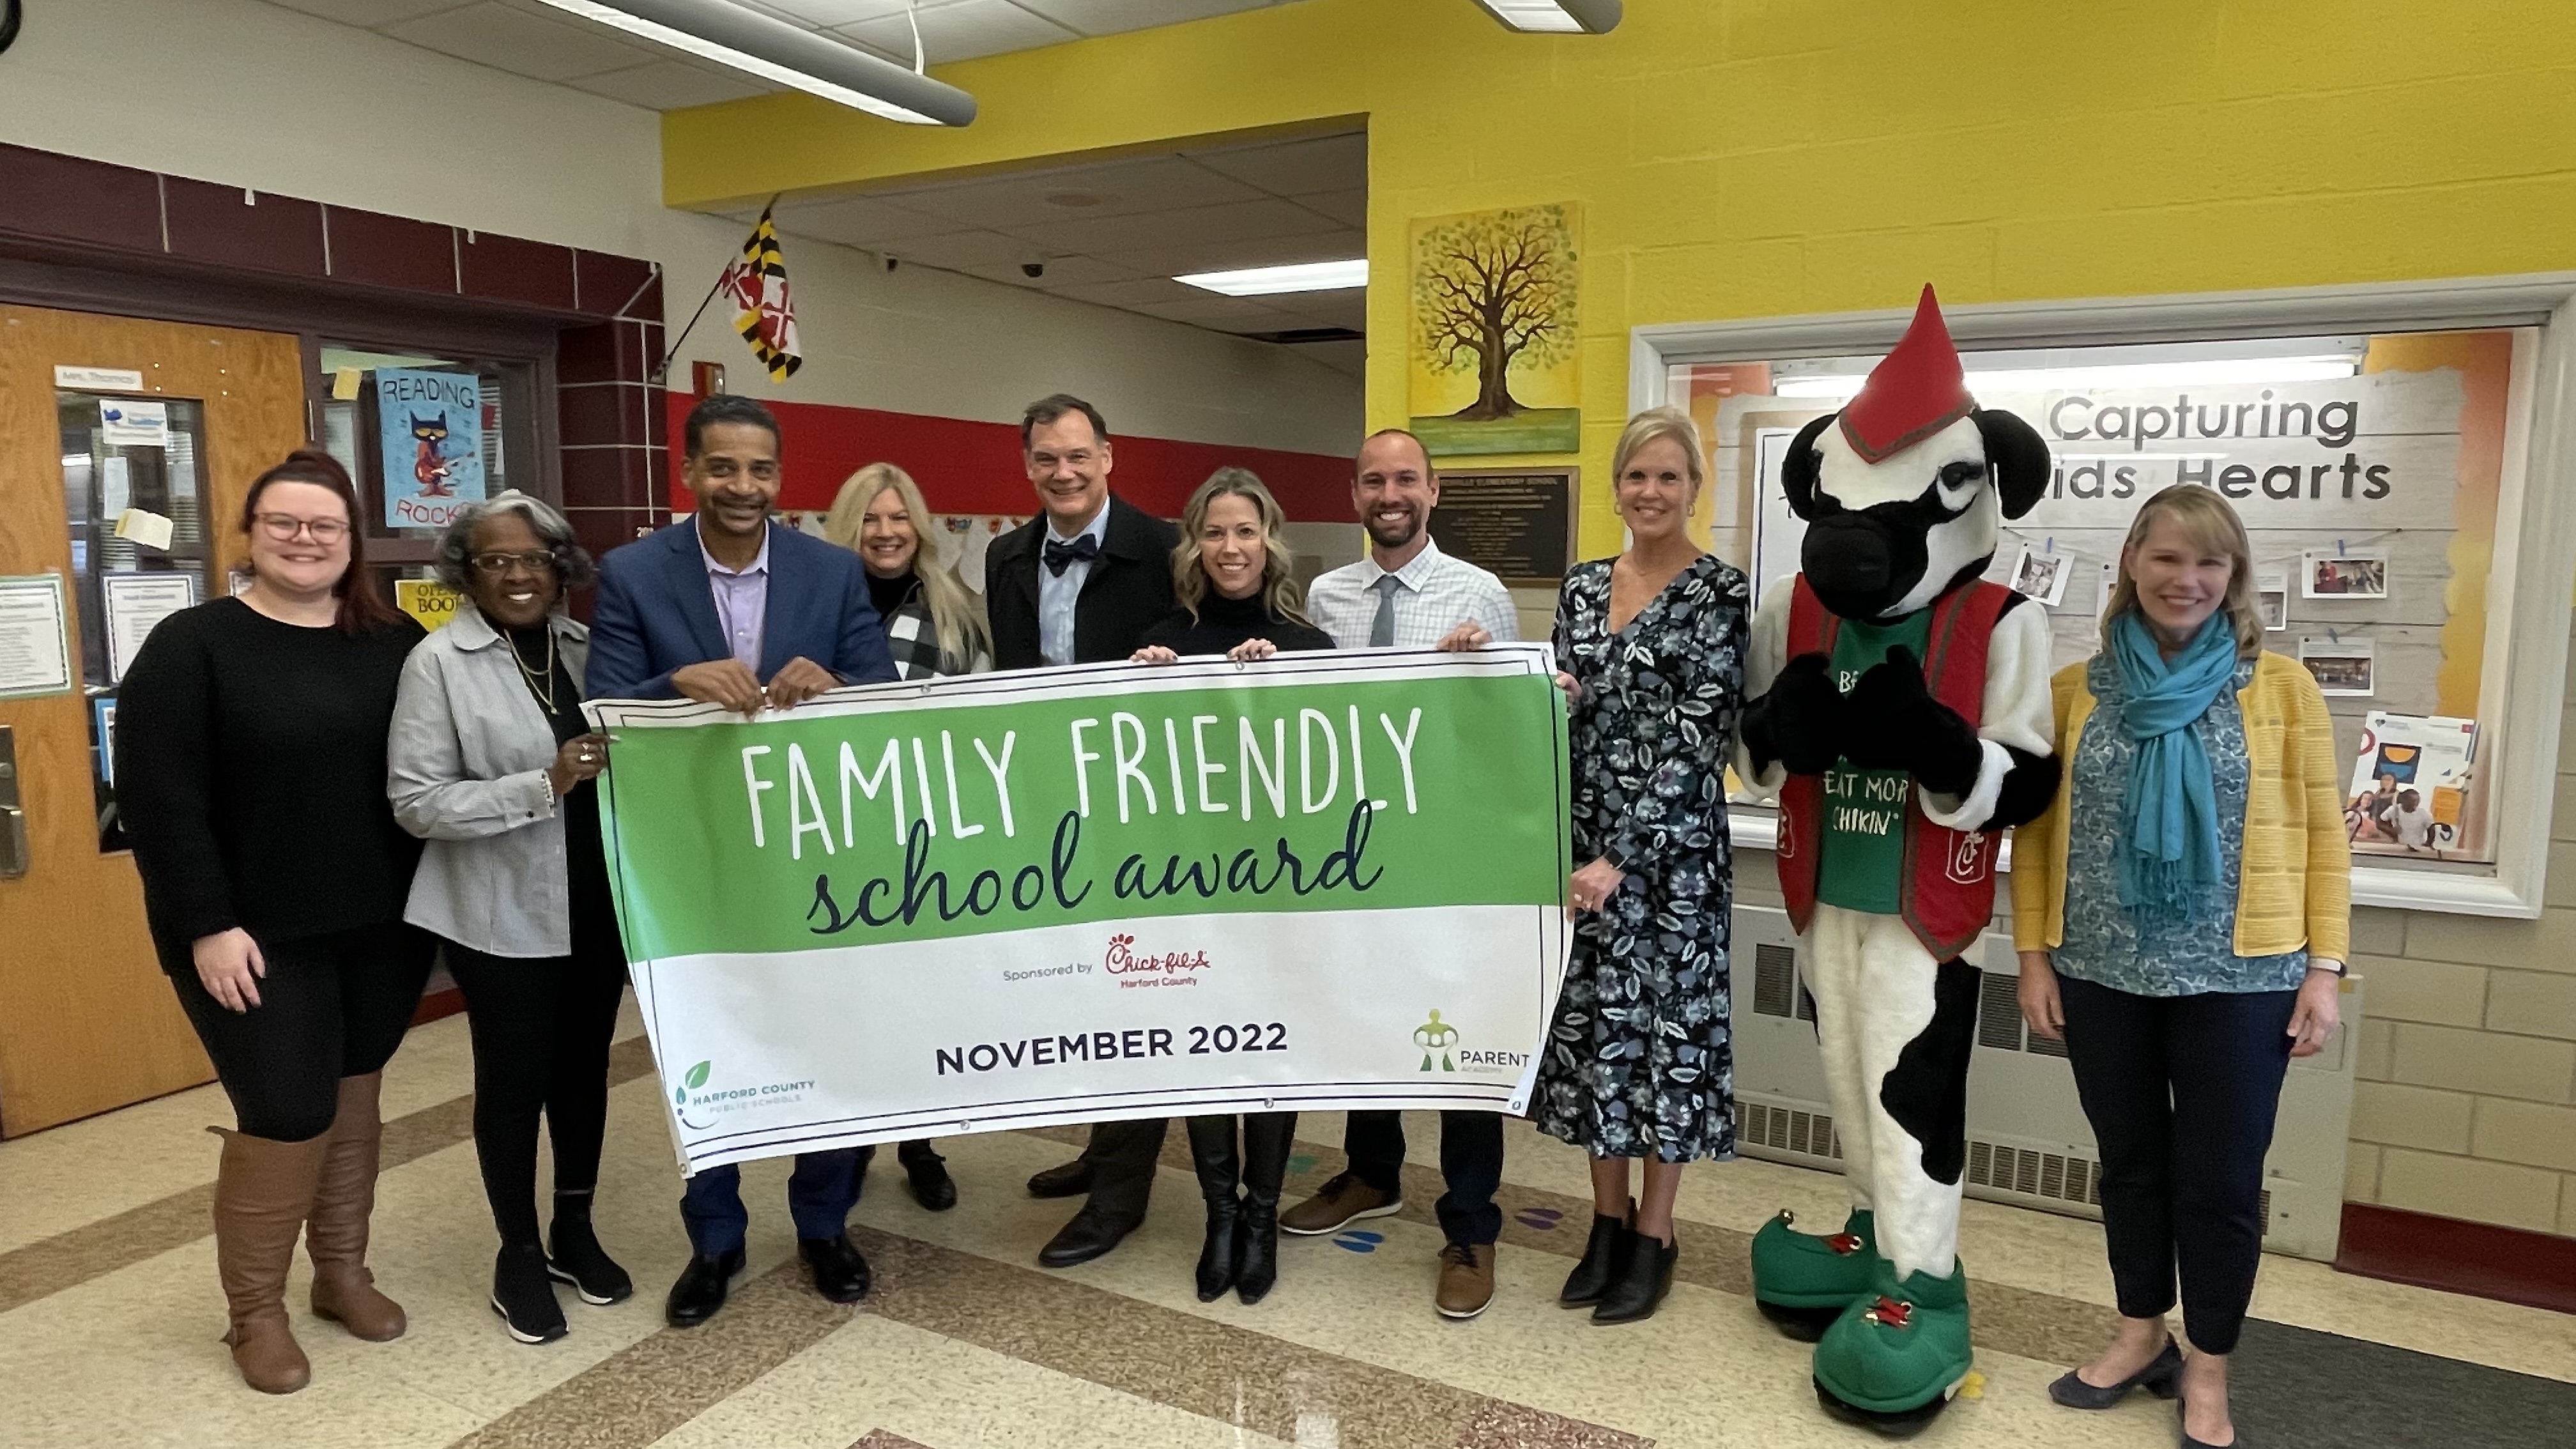 Churchville Elementary School Named November 2022 Family Friendly School!